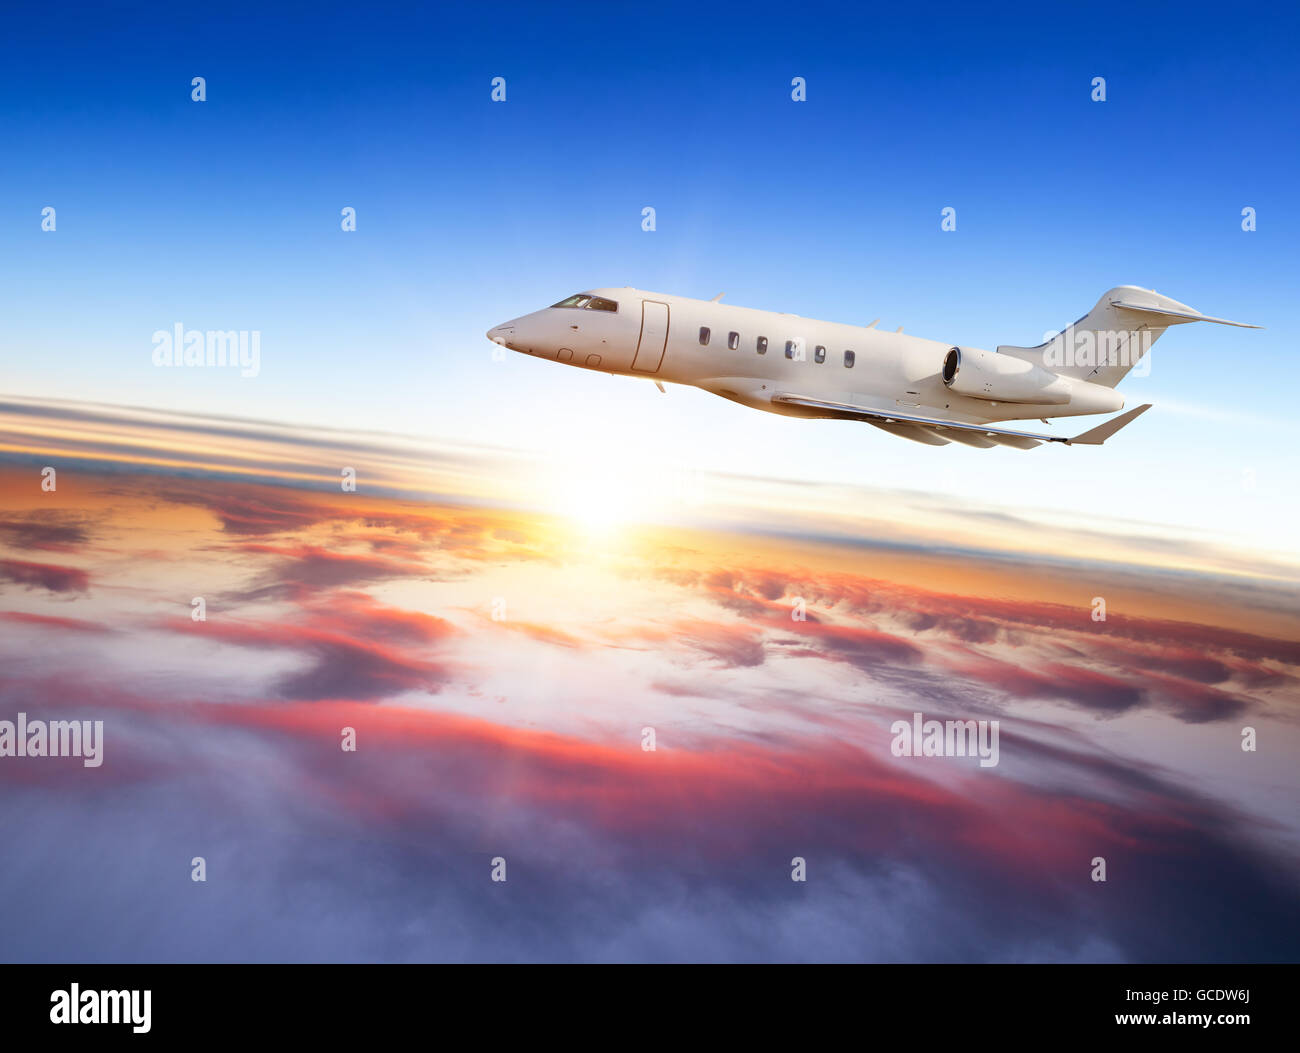 Jet Privato aereo volare sopra le nuvole in bel tramonto. Scattato dalla vista frontale Foto Stock